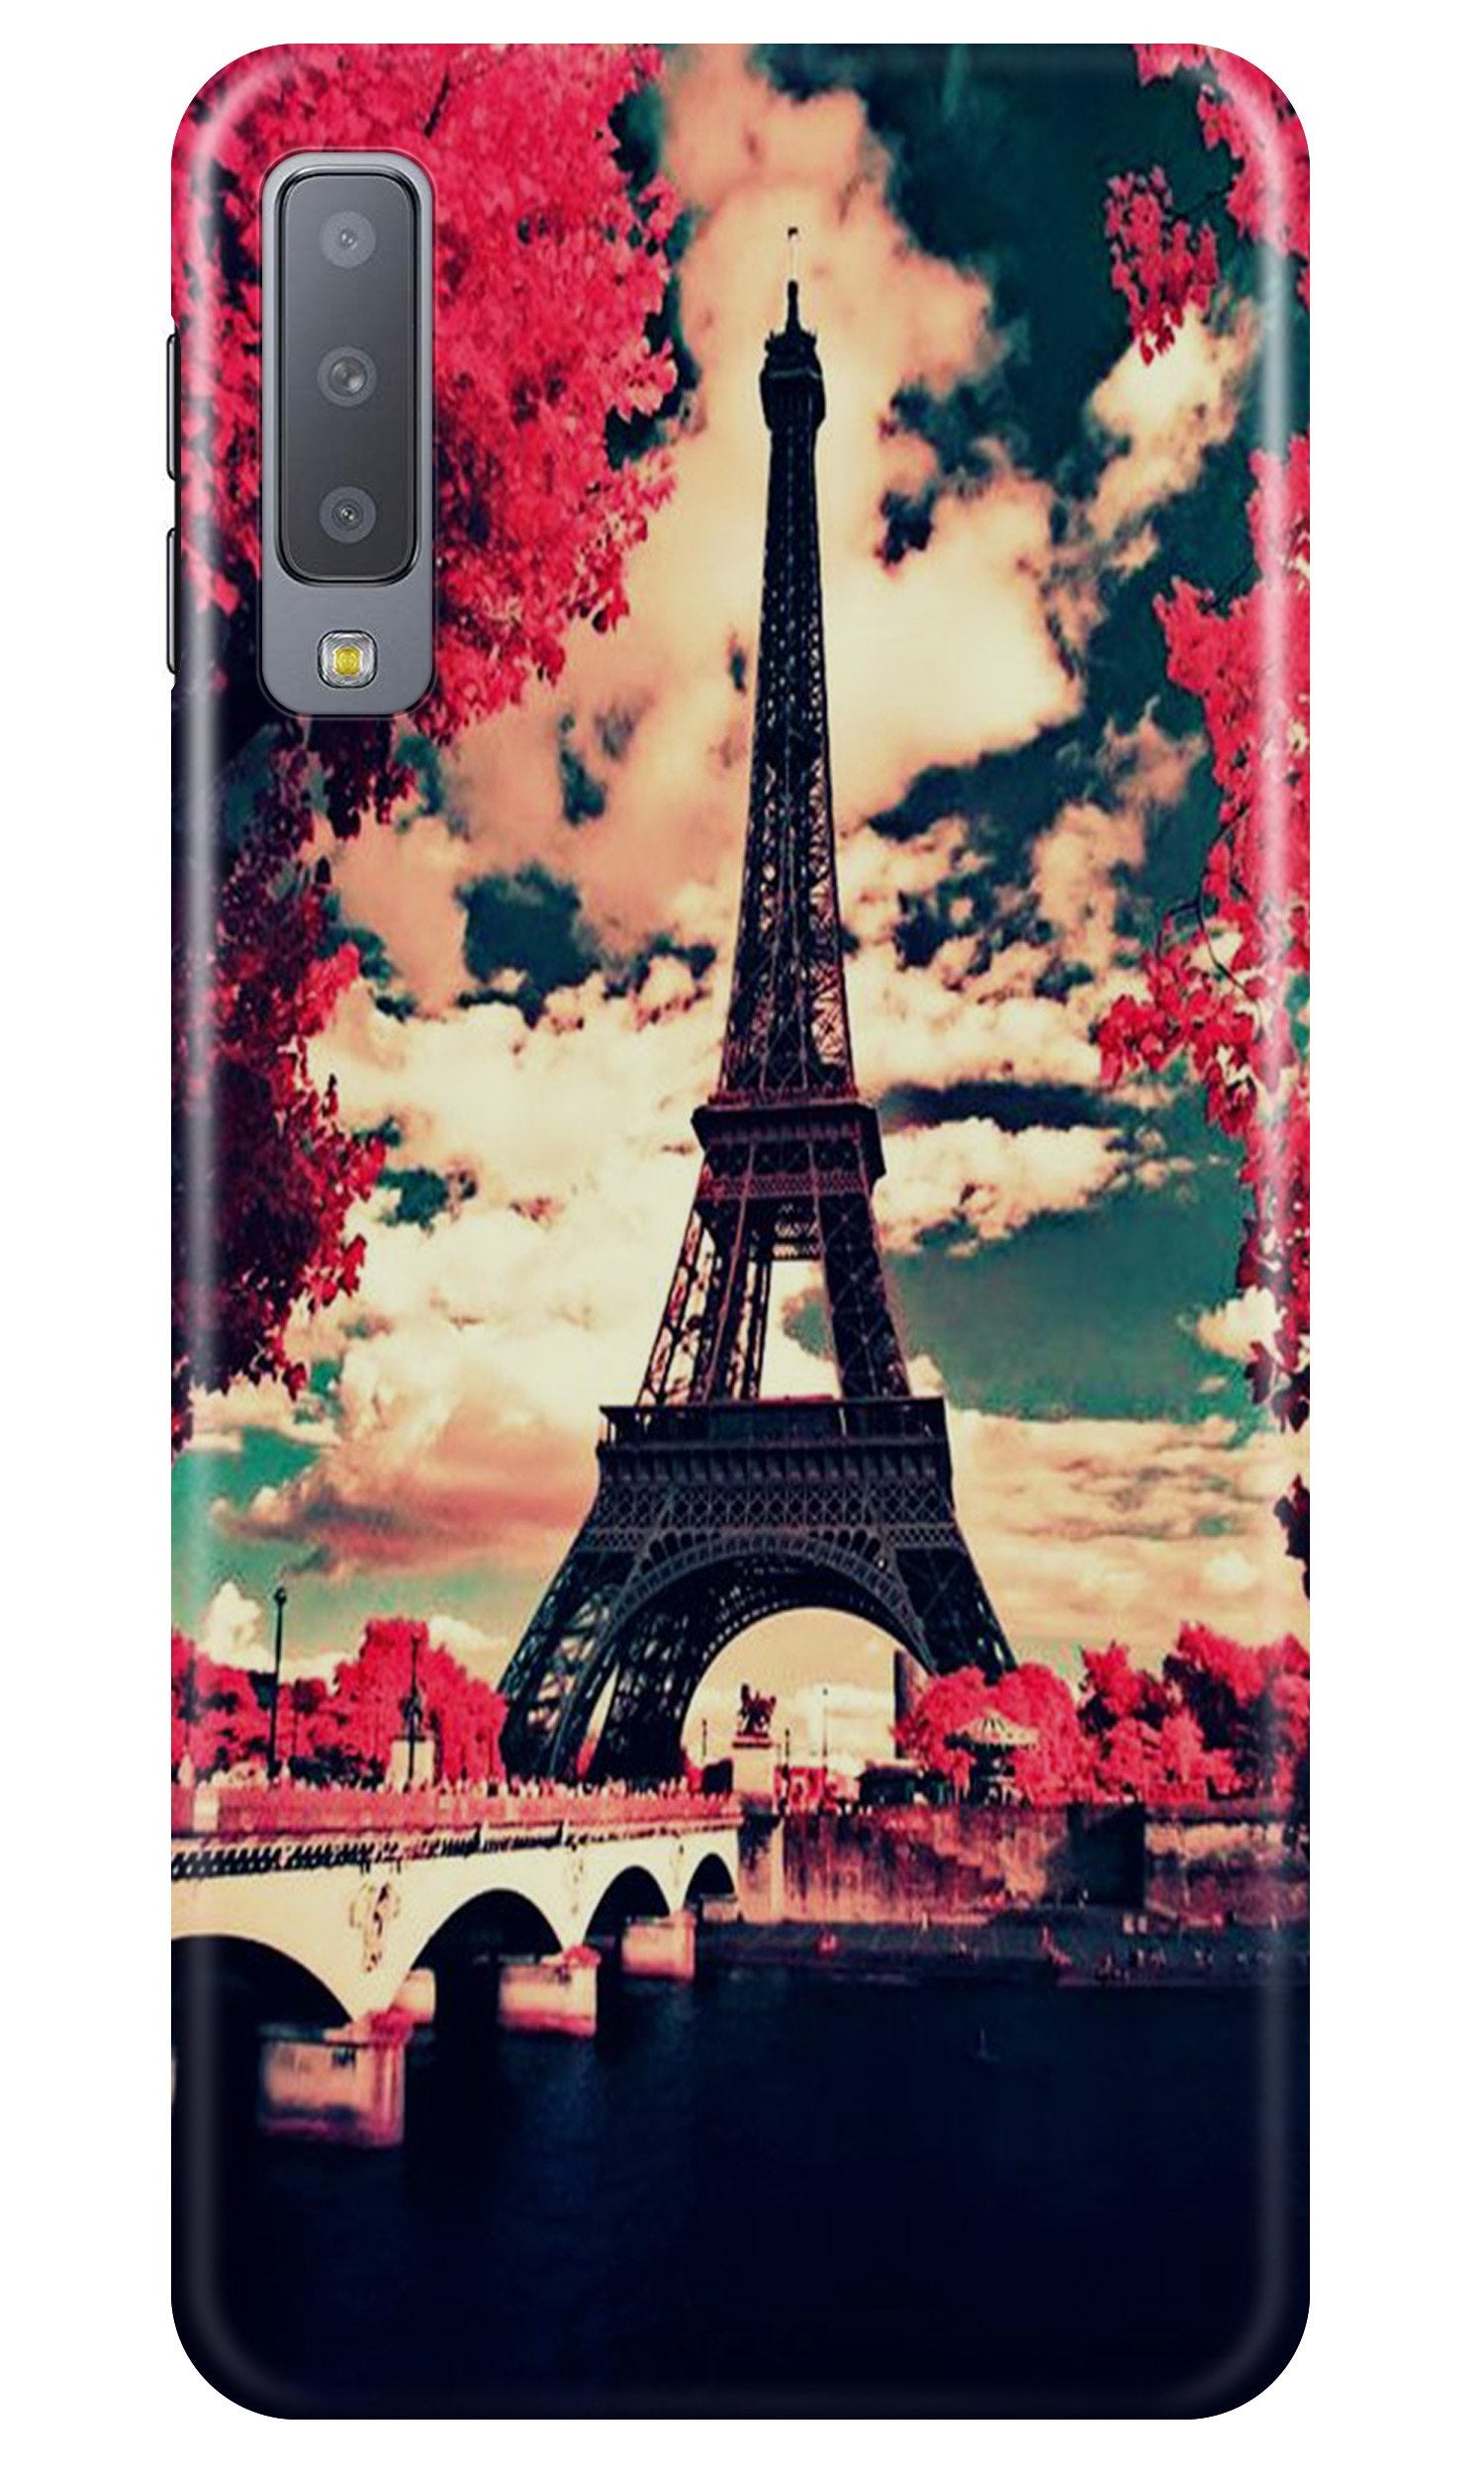 Eiffel Tower Case for Samsung Galaxy A70 (Design No. 212)